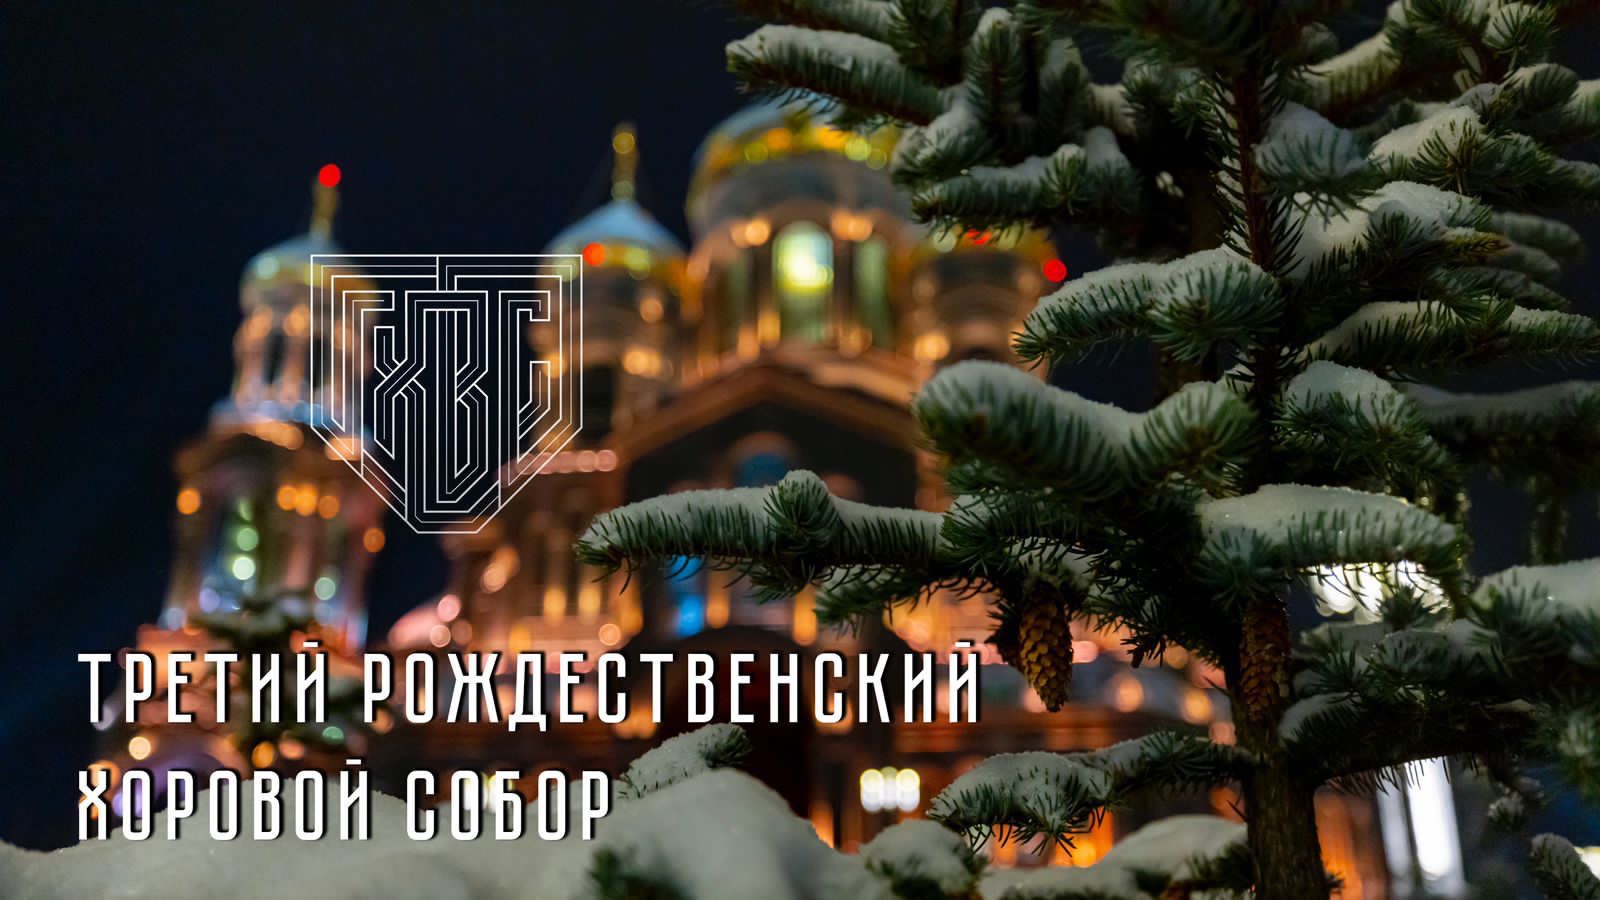 Рождественский хоровой Собор в Главном храме ВС РФ